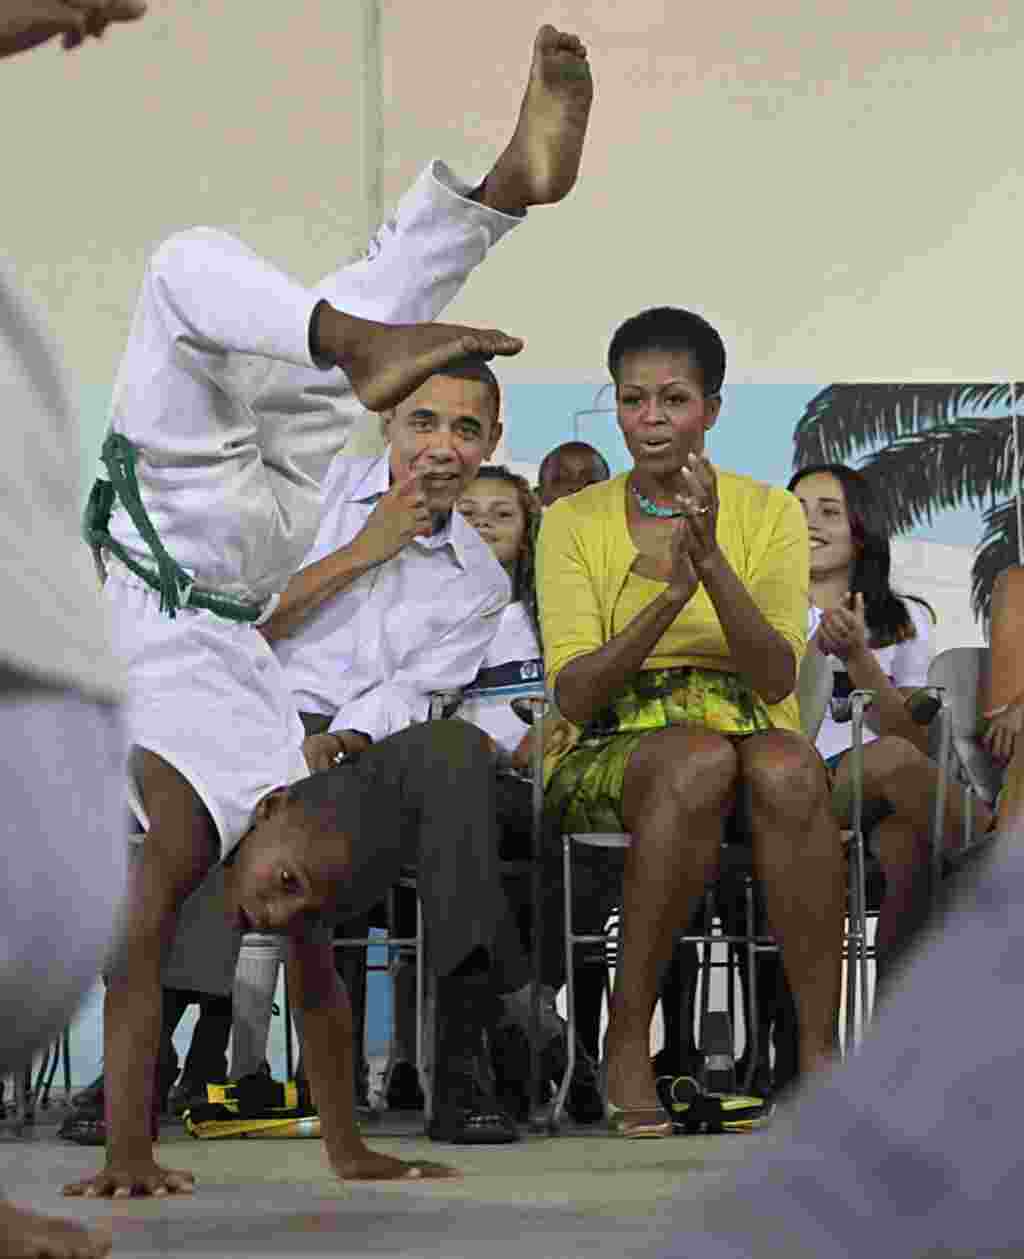 La primera dama estadounidense Michelle Obama observa una presentación de capoeira, en la favela Ciudad de Dios, en Río de Janeiro.